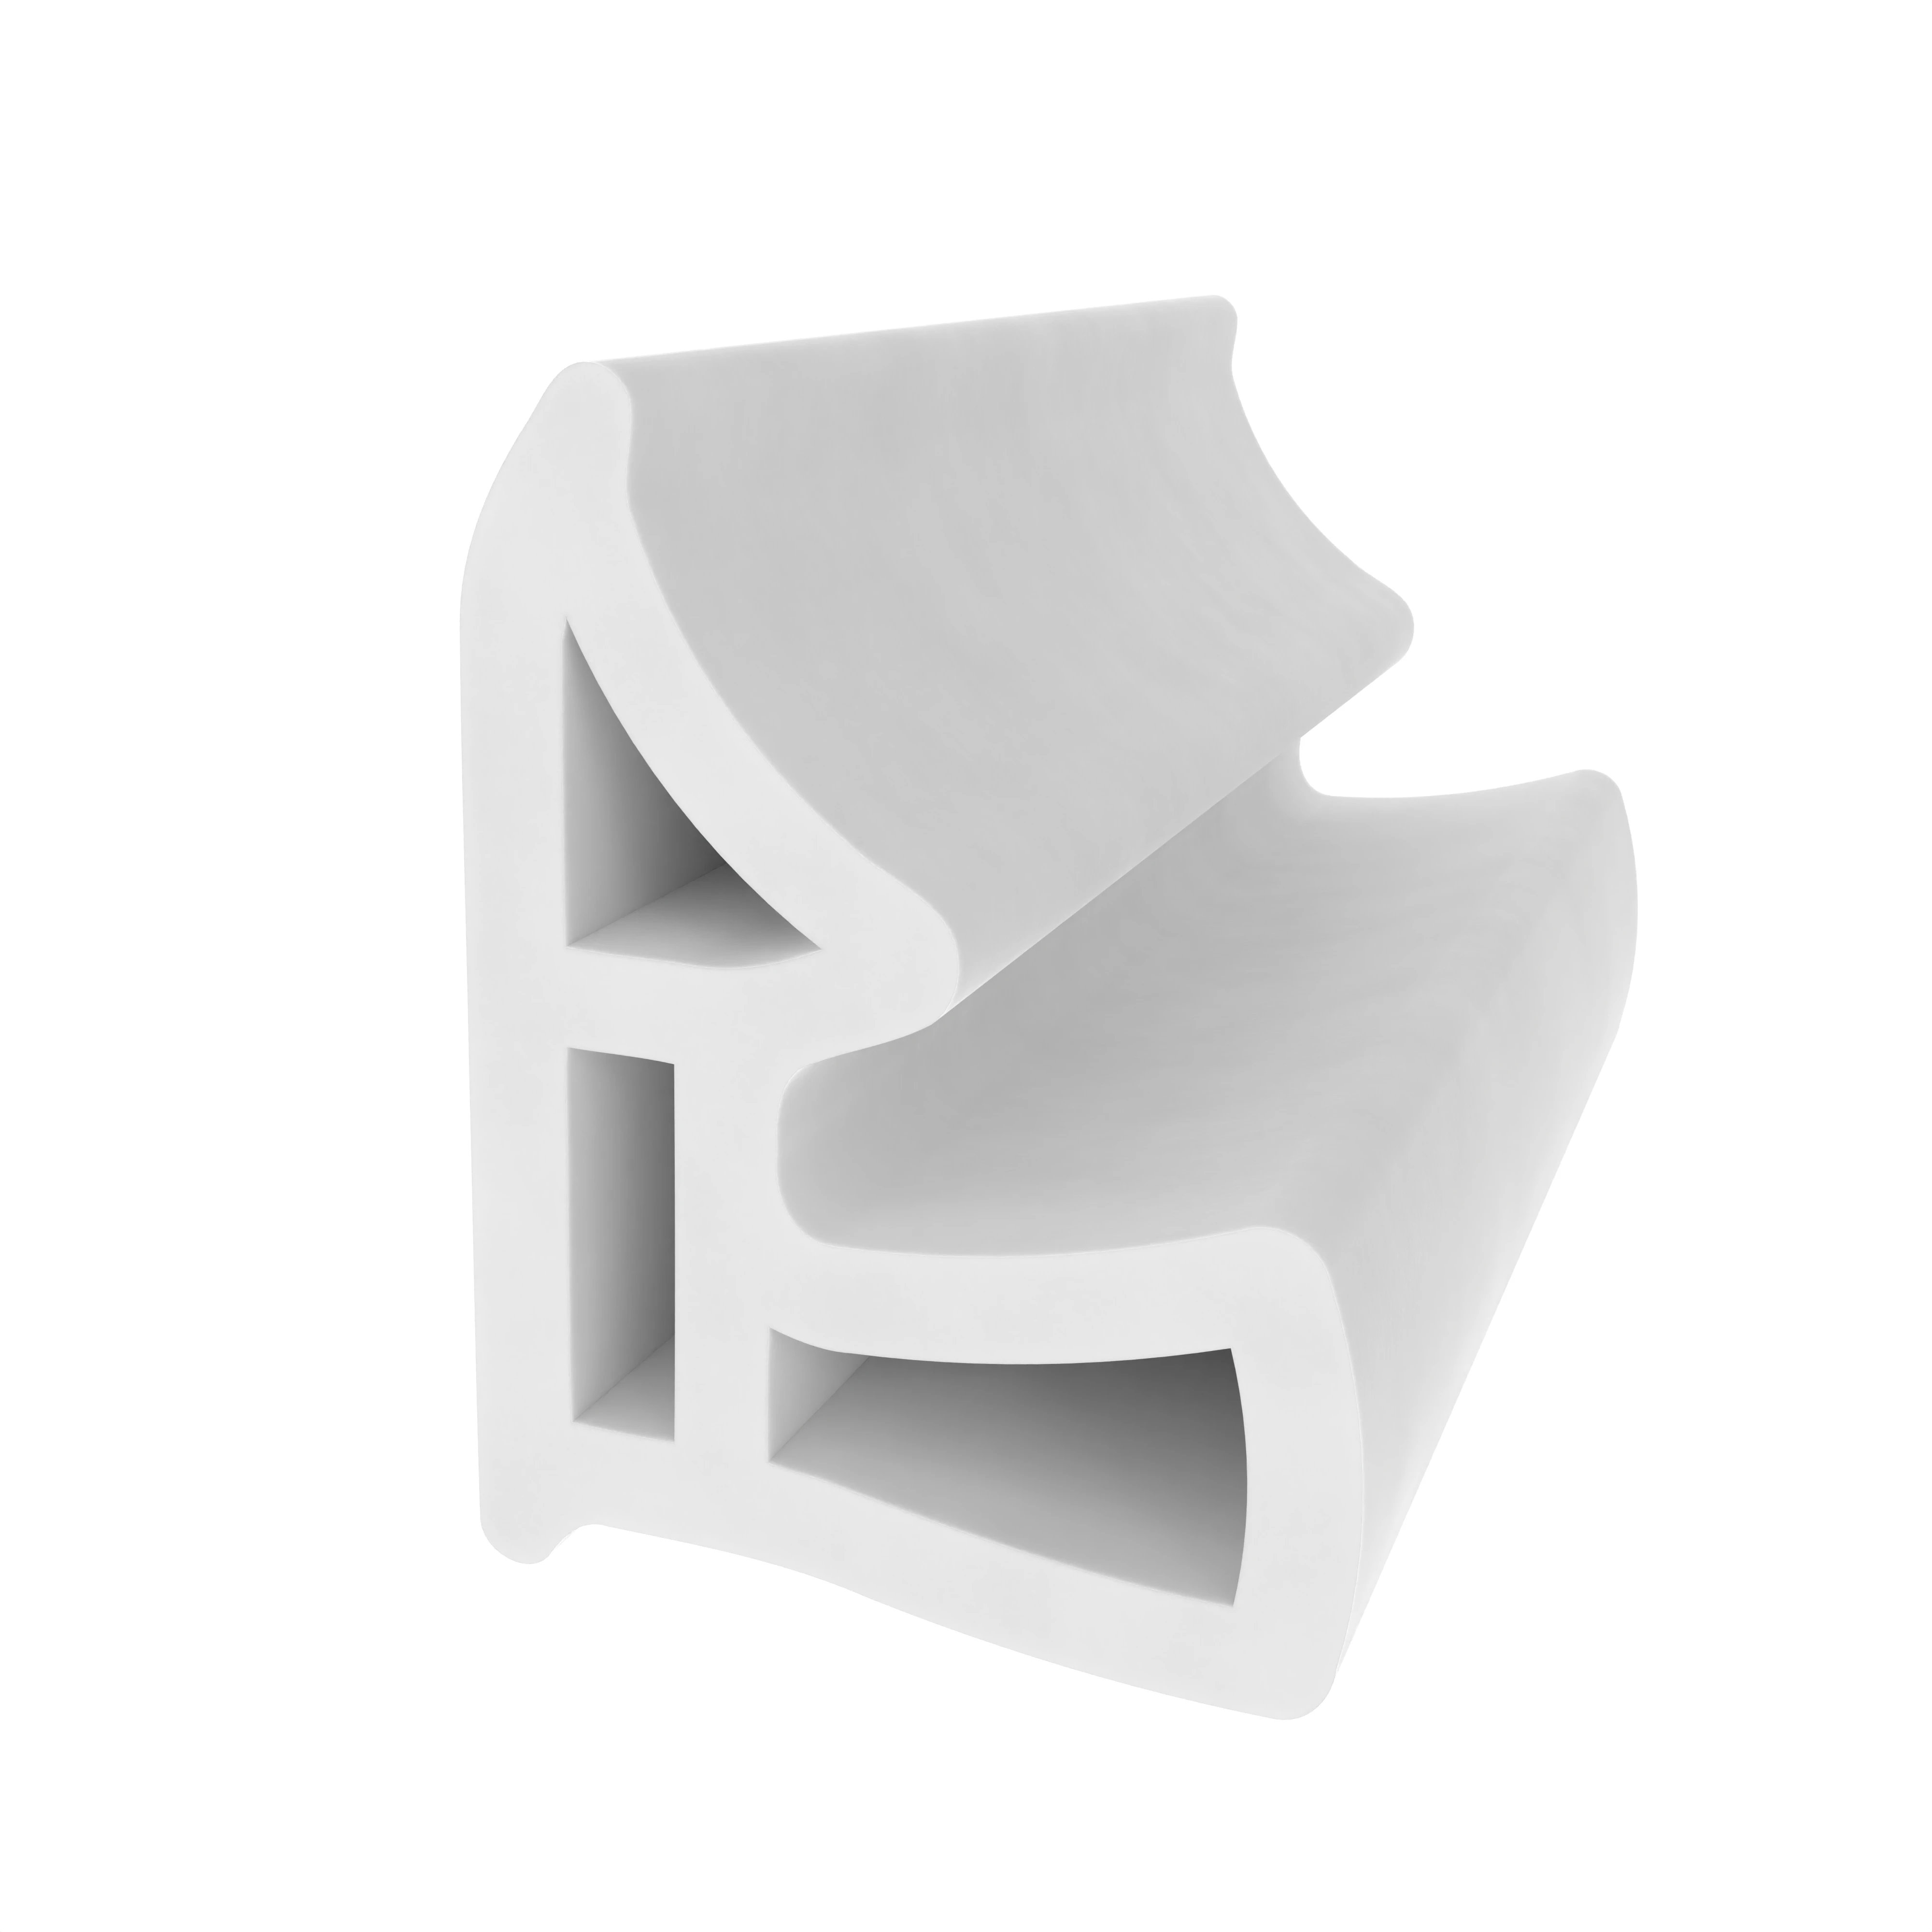 Stahlzargendichtung für hinterschnittene Nut | 13 mm Breite | Farbe: weiß